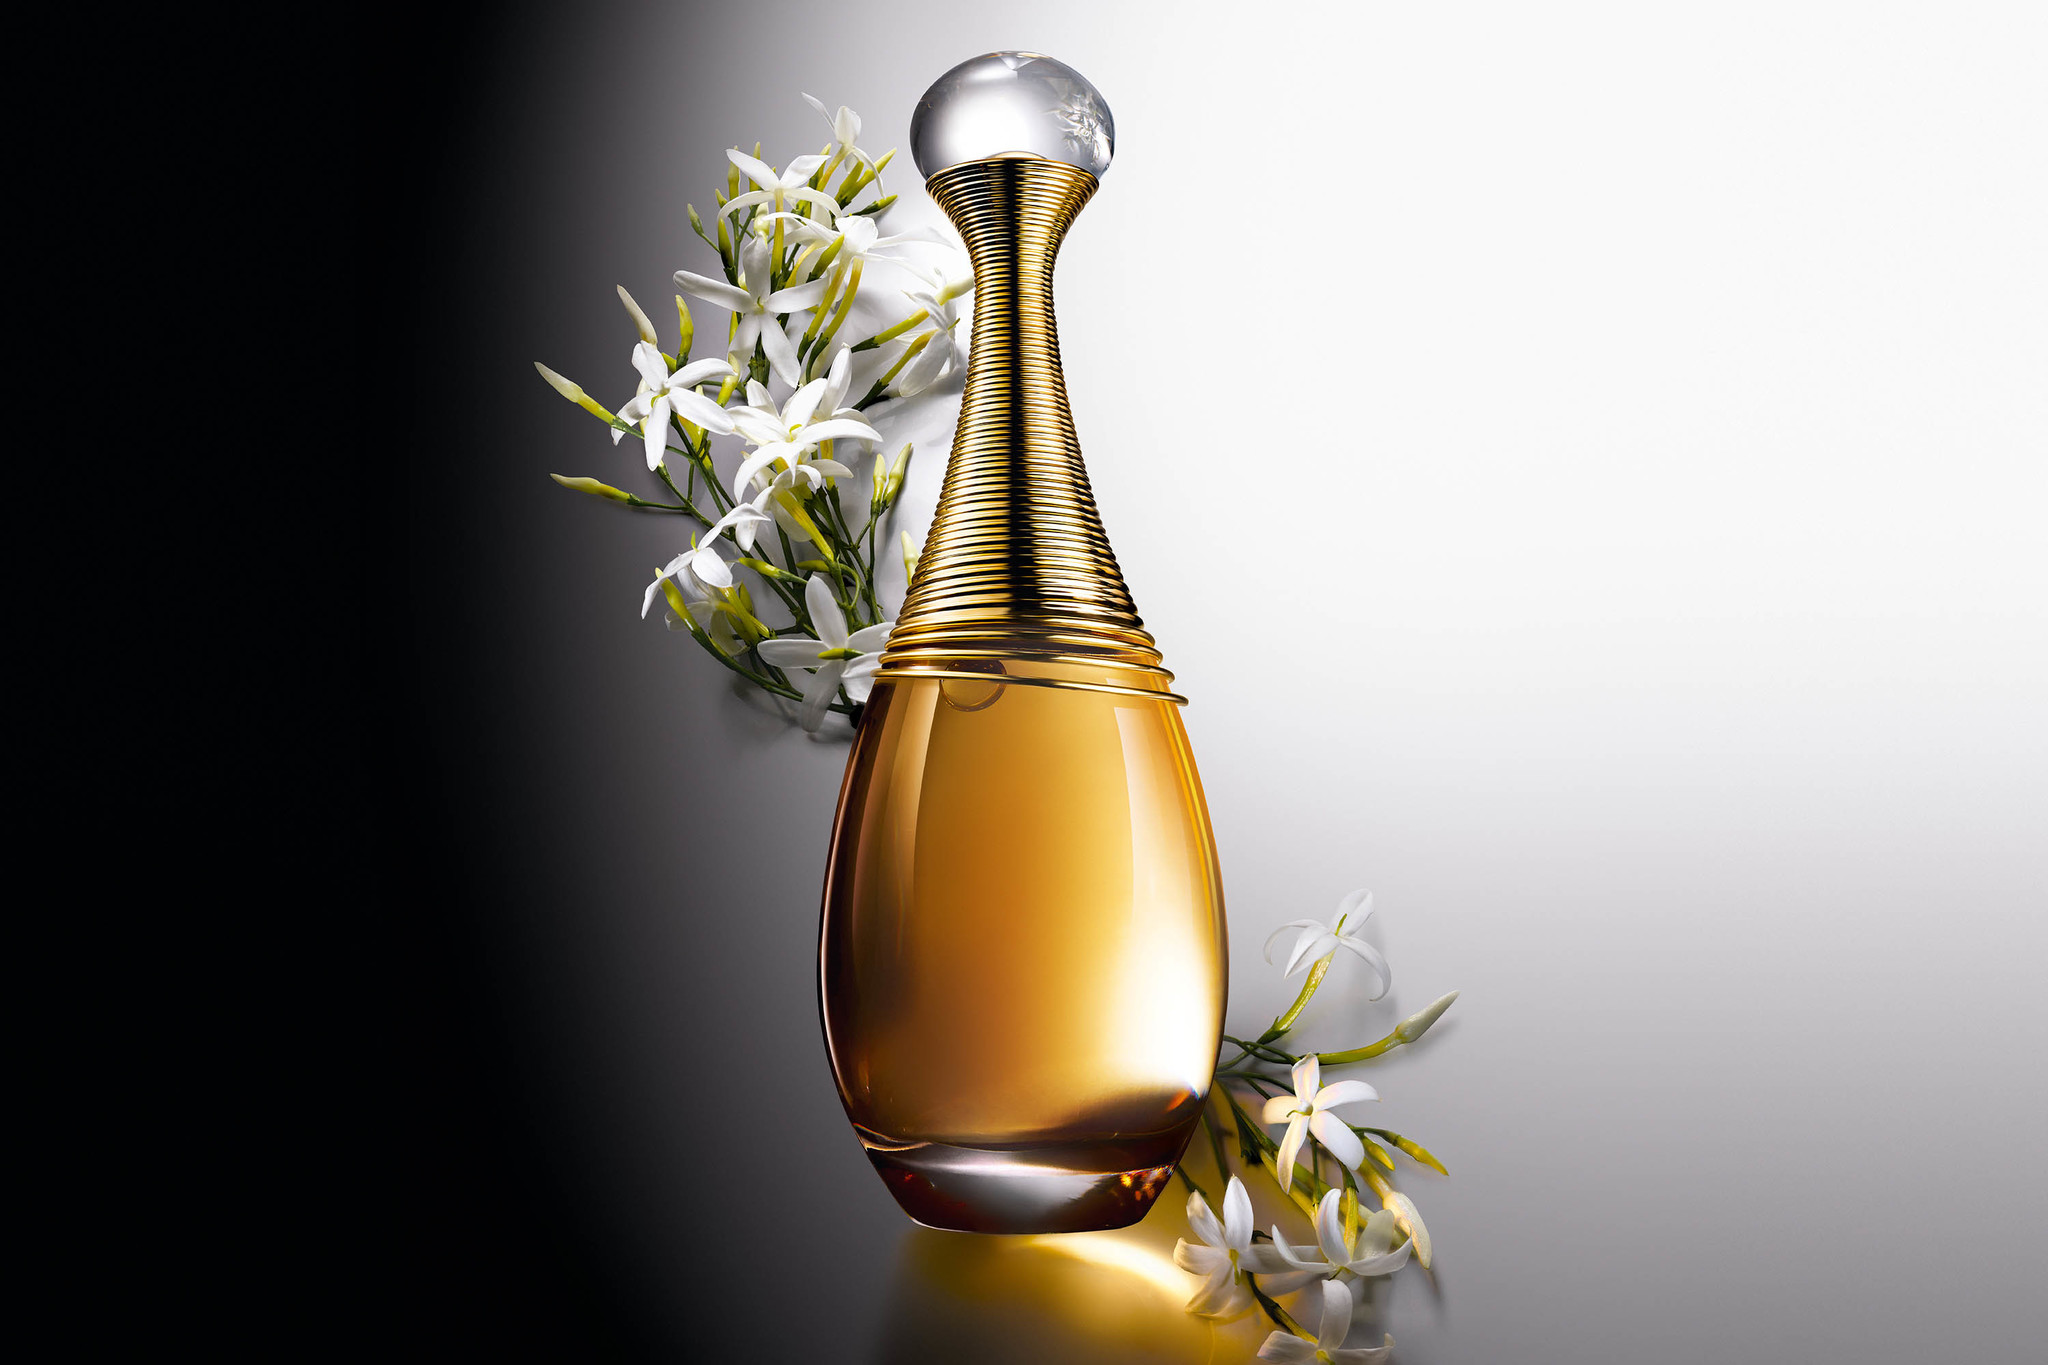 Эксклюзивная коллекция ароматов Christian Dior  Отзывы покупателей   Косметиста